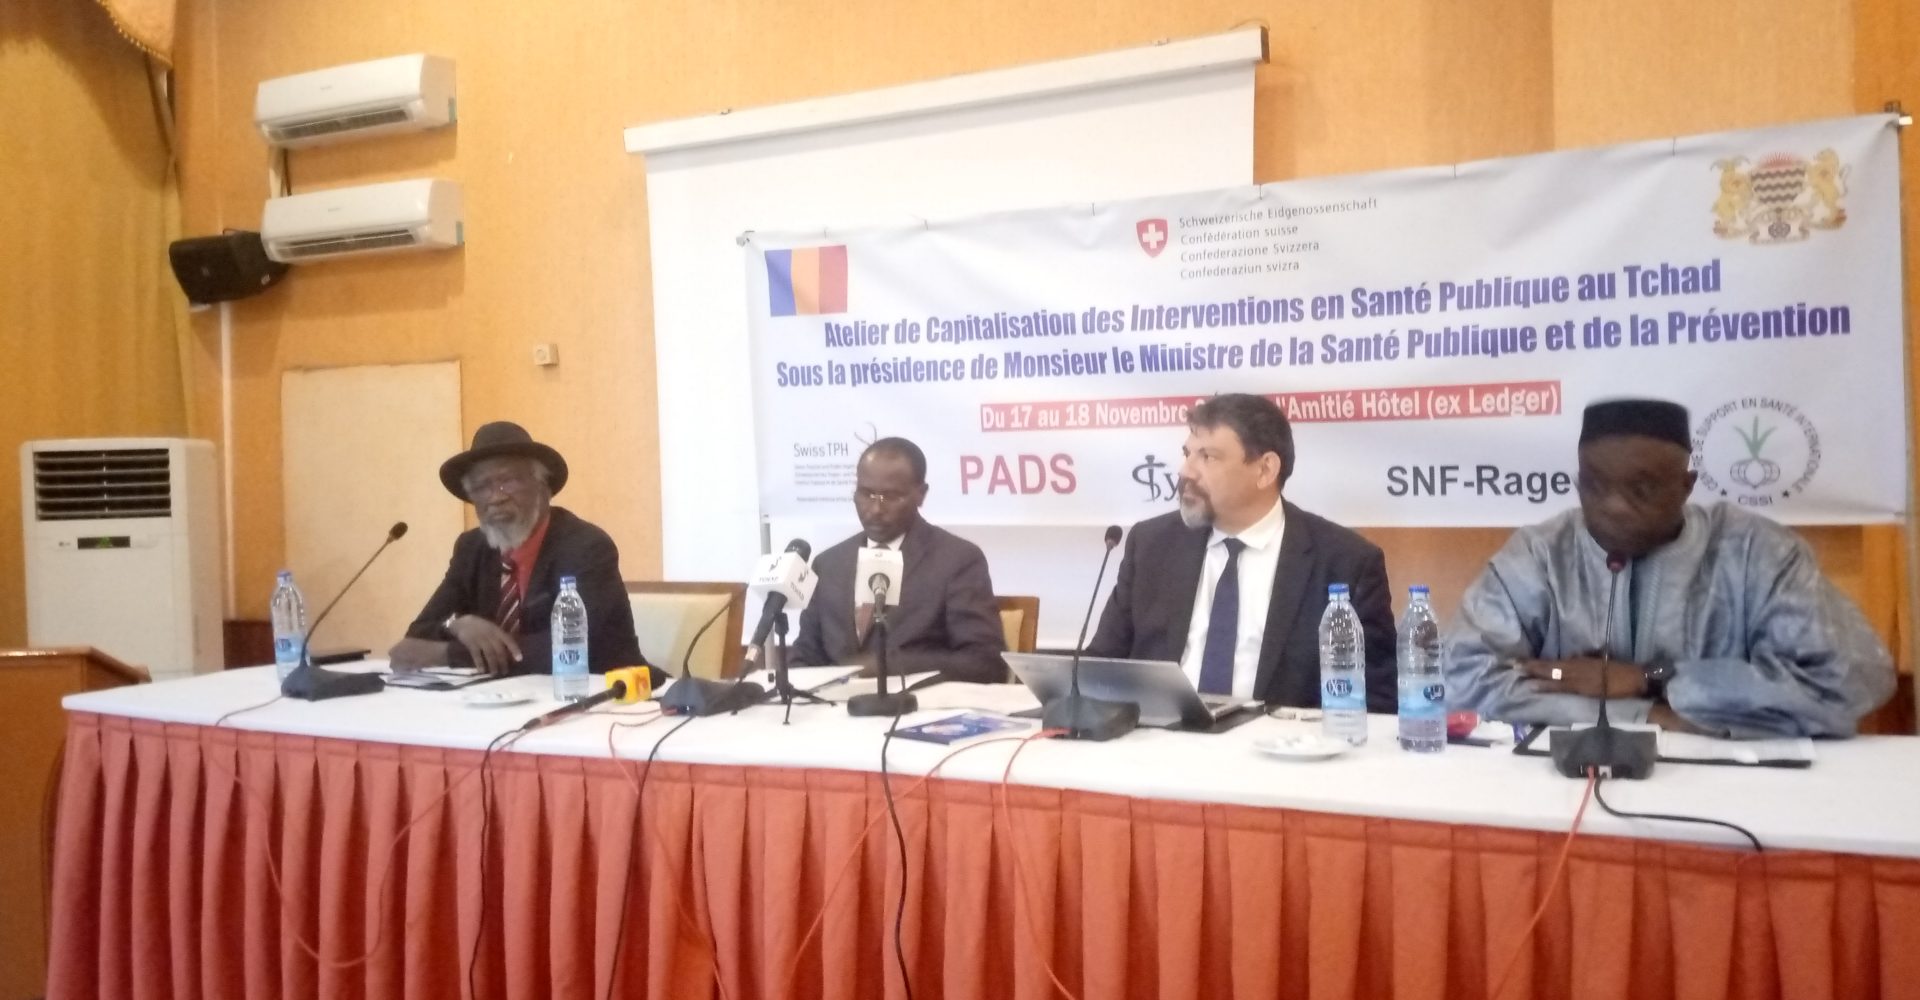 Le Pads capitalise ses interventions en santé publique au Tchad 1